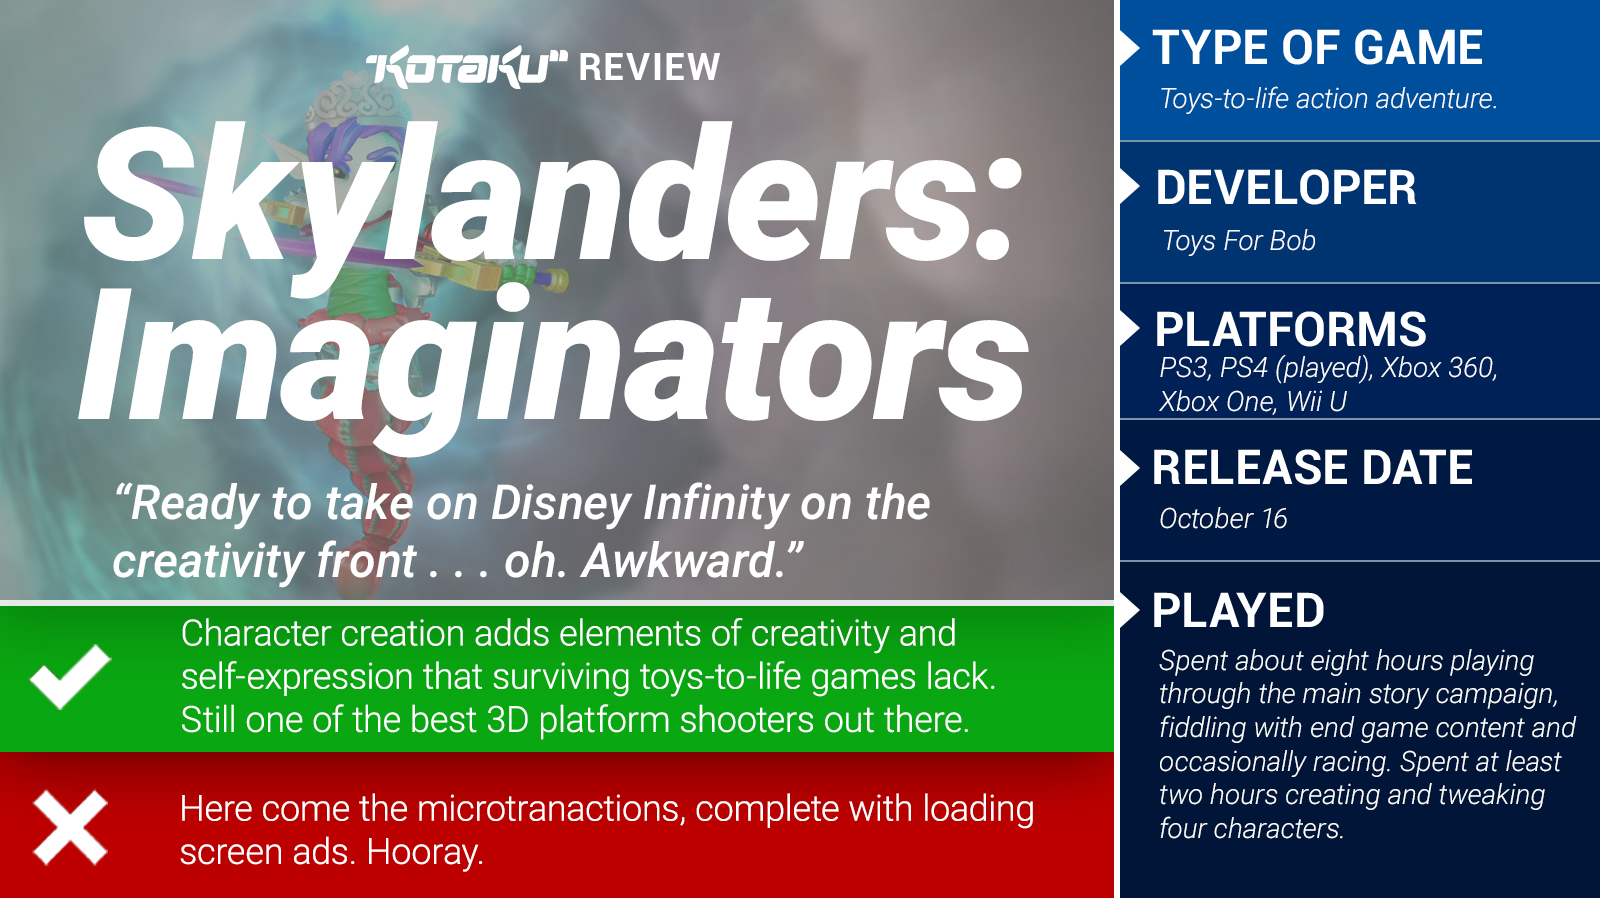 Skylanders: Imaginators: The Kotaku Review